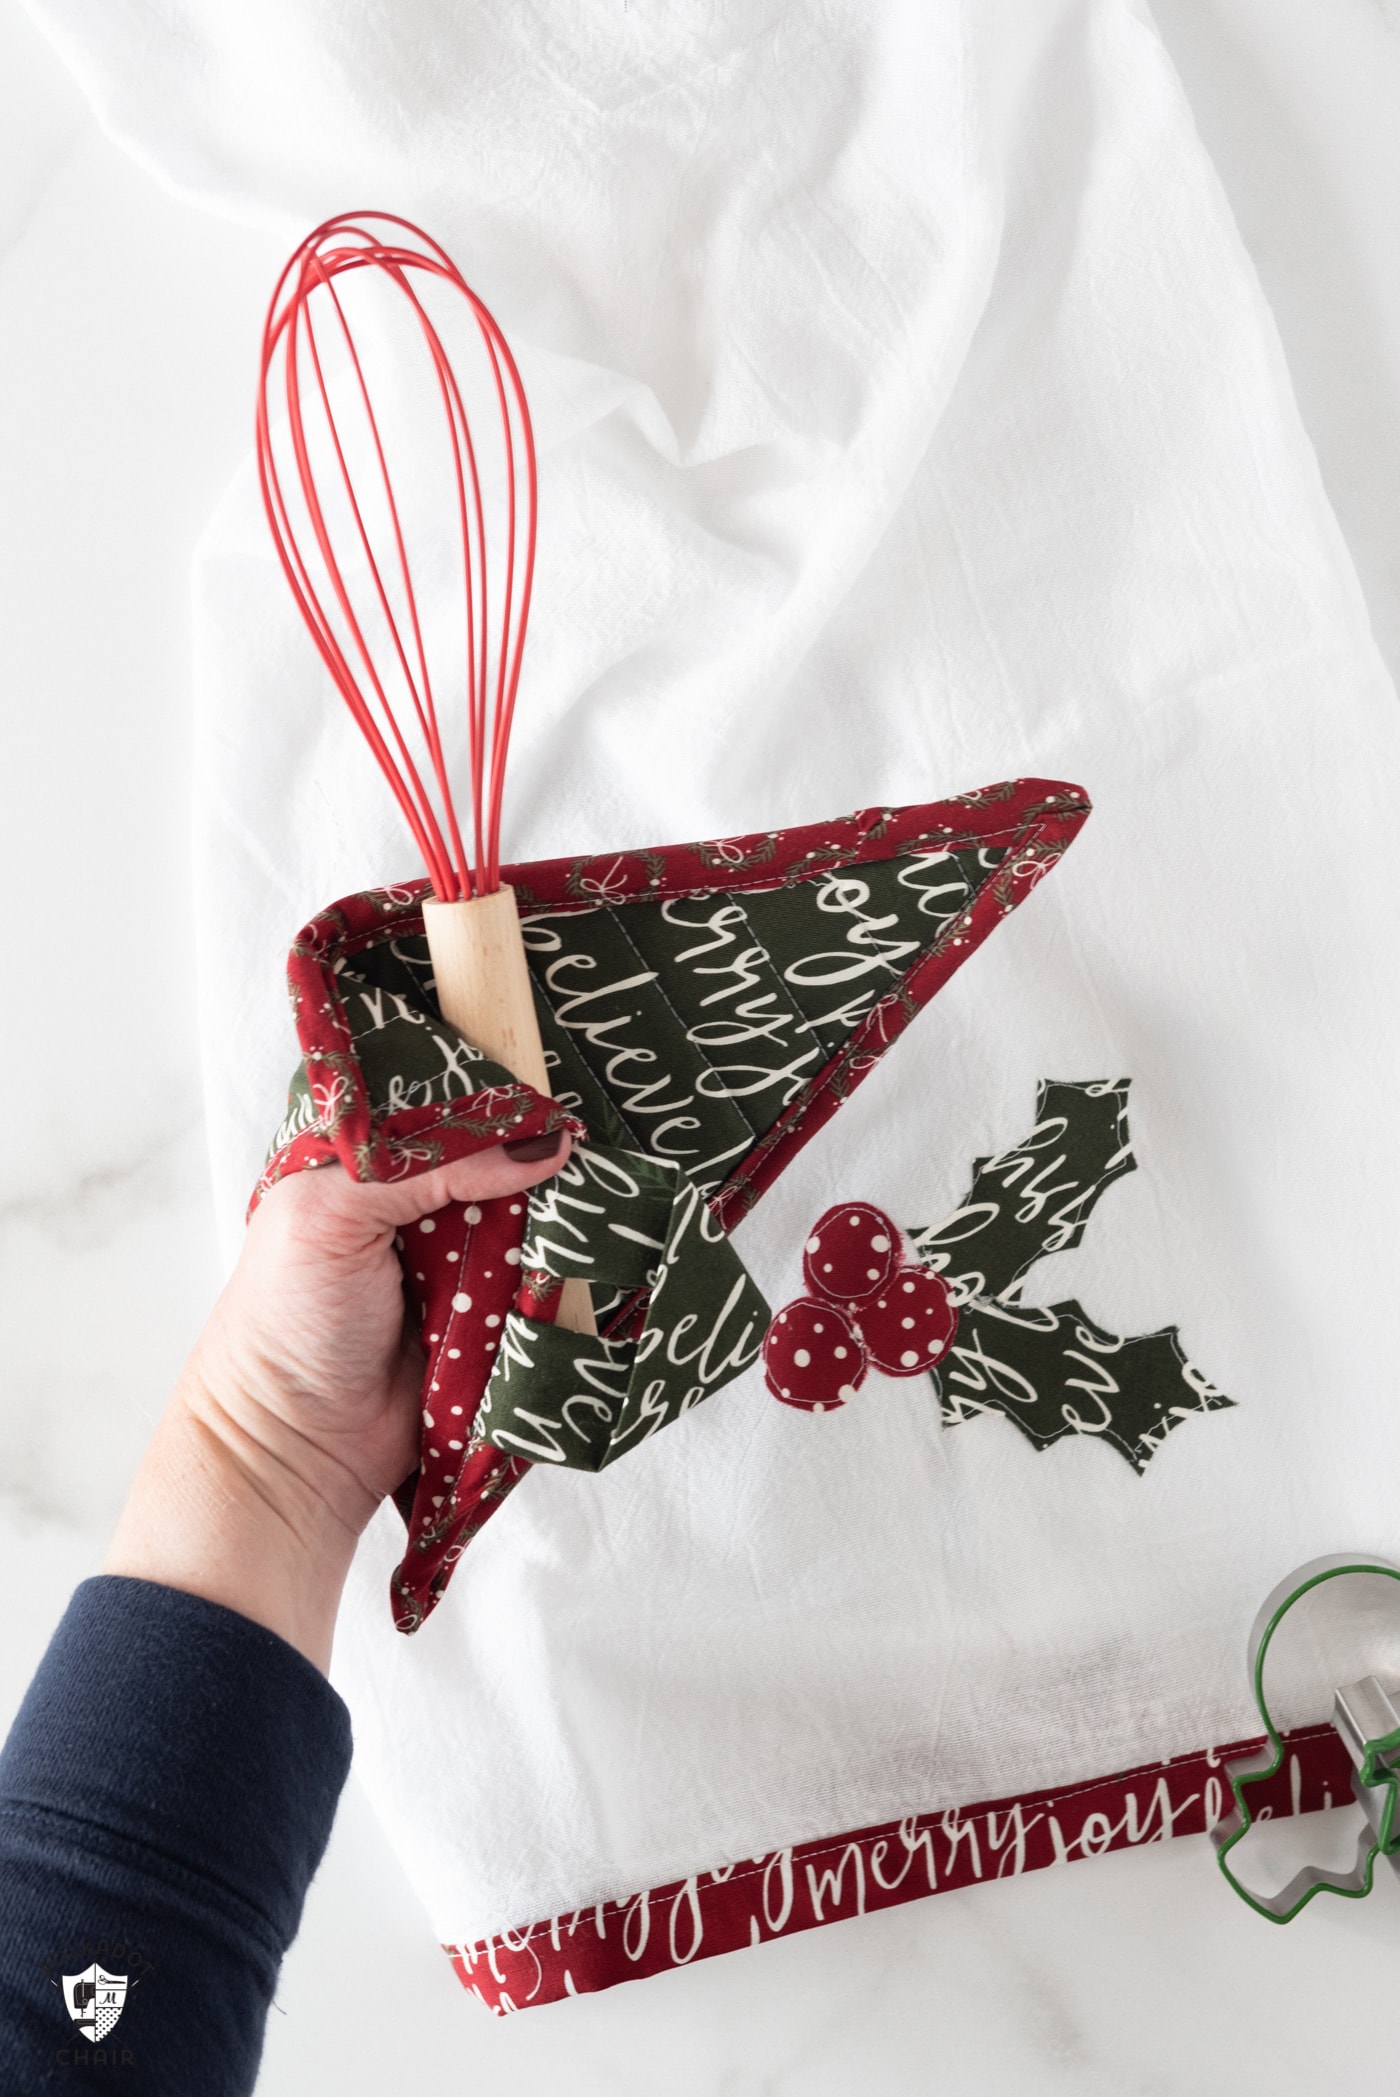 Apprenez à réaliser des maniques de Noël matelassées avec ce patron de couture. Comprend des maniques rondes, des maniques enveloppes, des coussins chauffants pour sapin de Noël et des motifs de coussinets chauffants rayés. #Christmassewing #Potholder #Patrons de couture